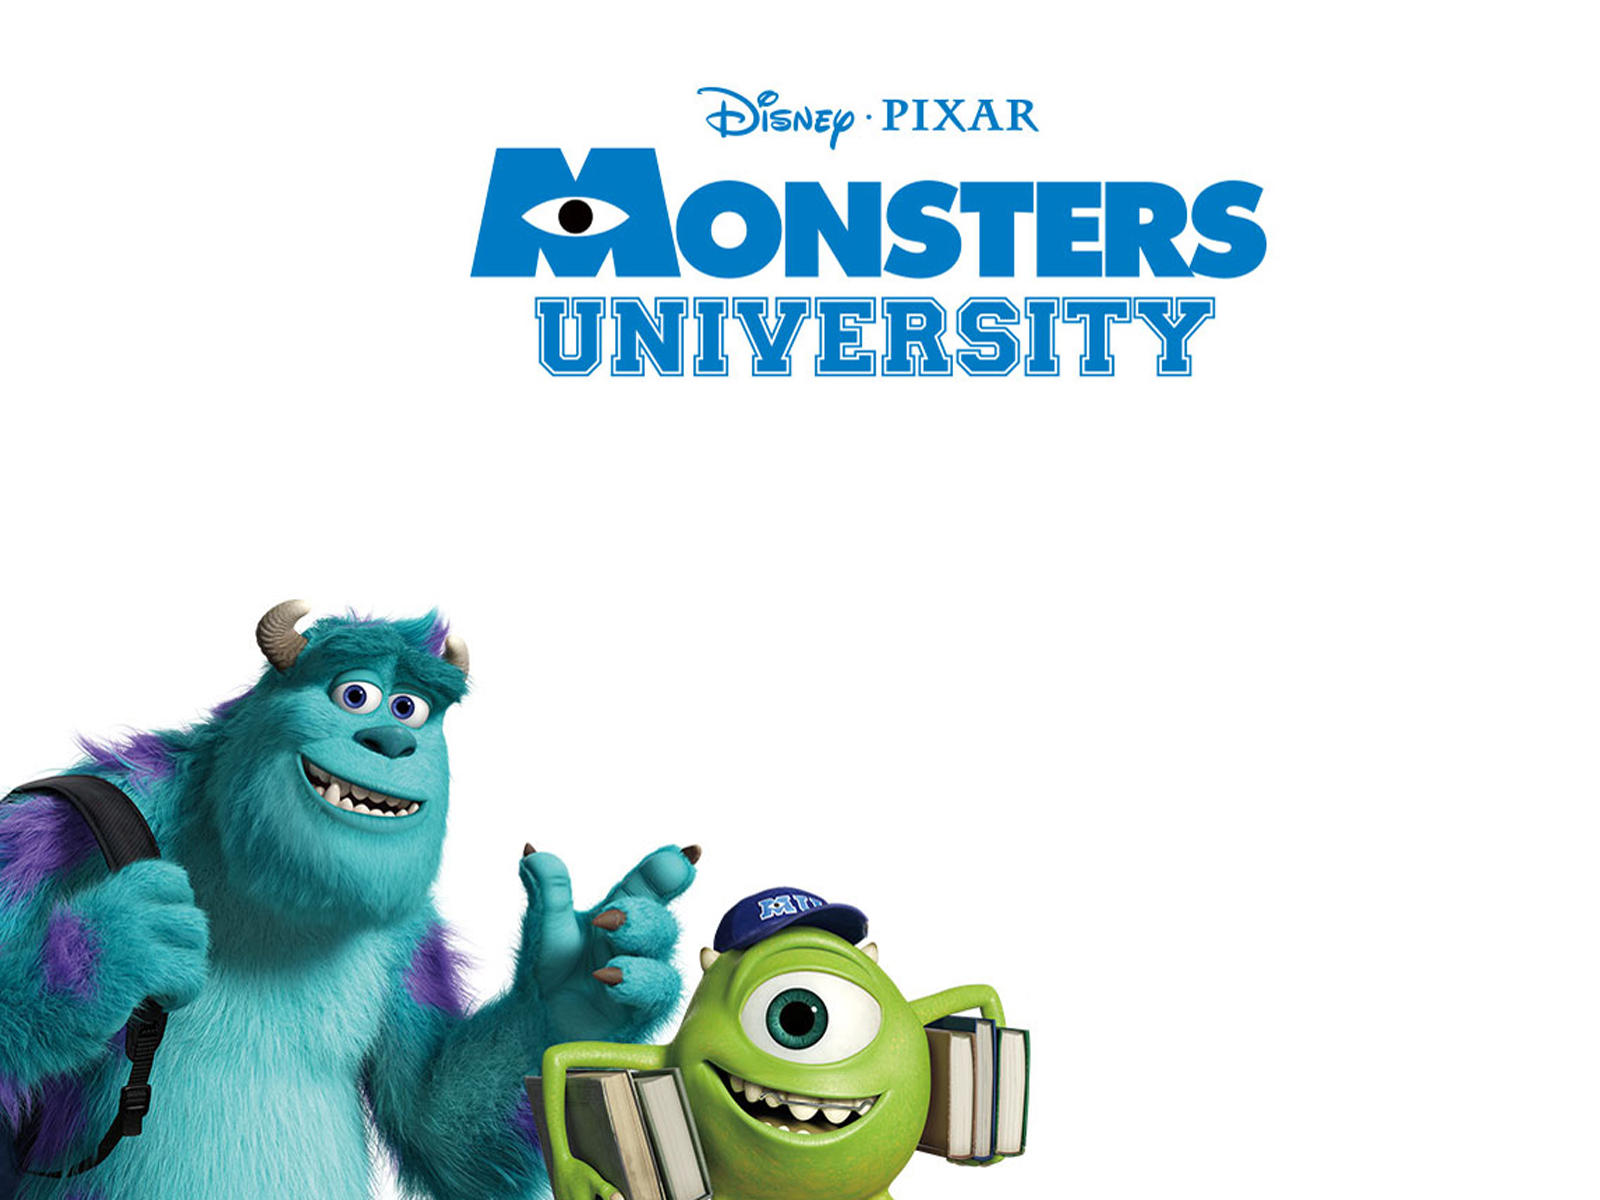 http://3.bp.blogspot.com/-IsmBnWeg-JU/UMTlbtsinYI/AAAAAAAAGmI/vmswepniMLA/s1600/Pixar-Monsters-University-HD-Wallpaper_Vvallpaper.Net.jpg